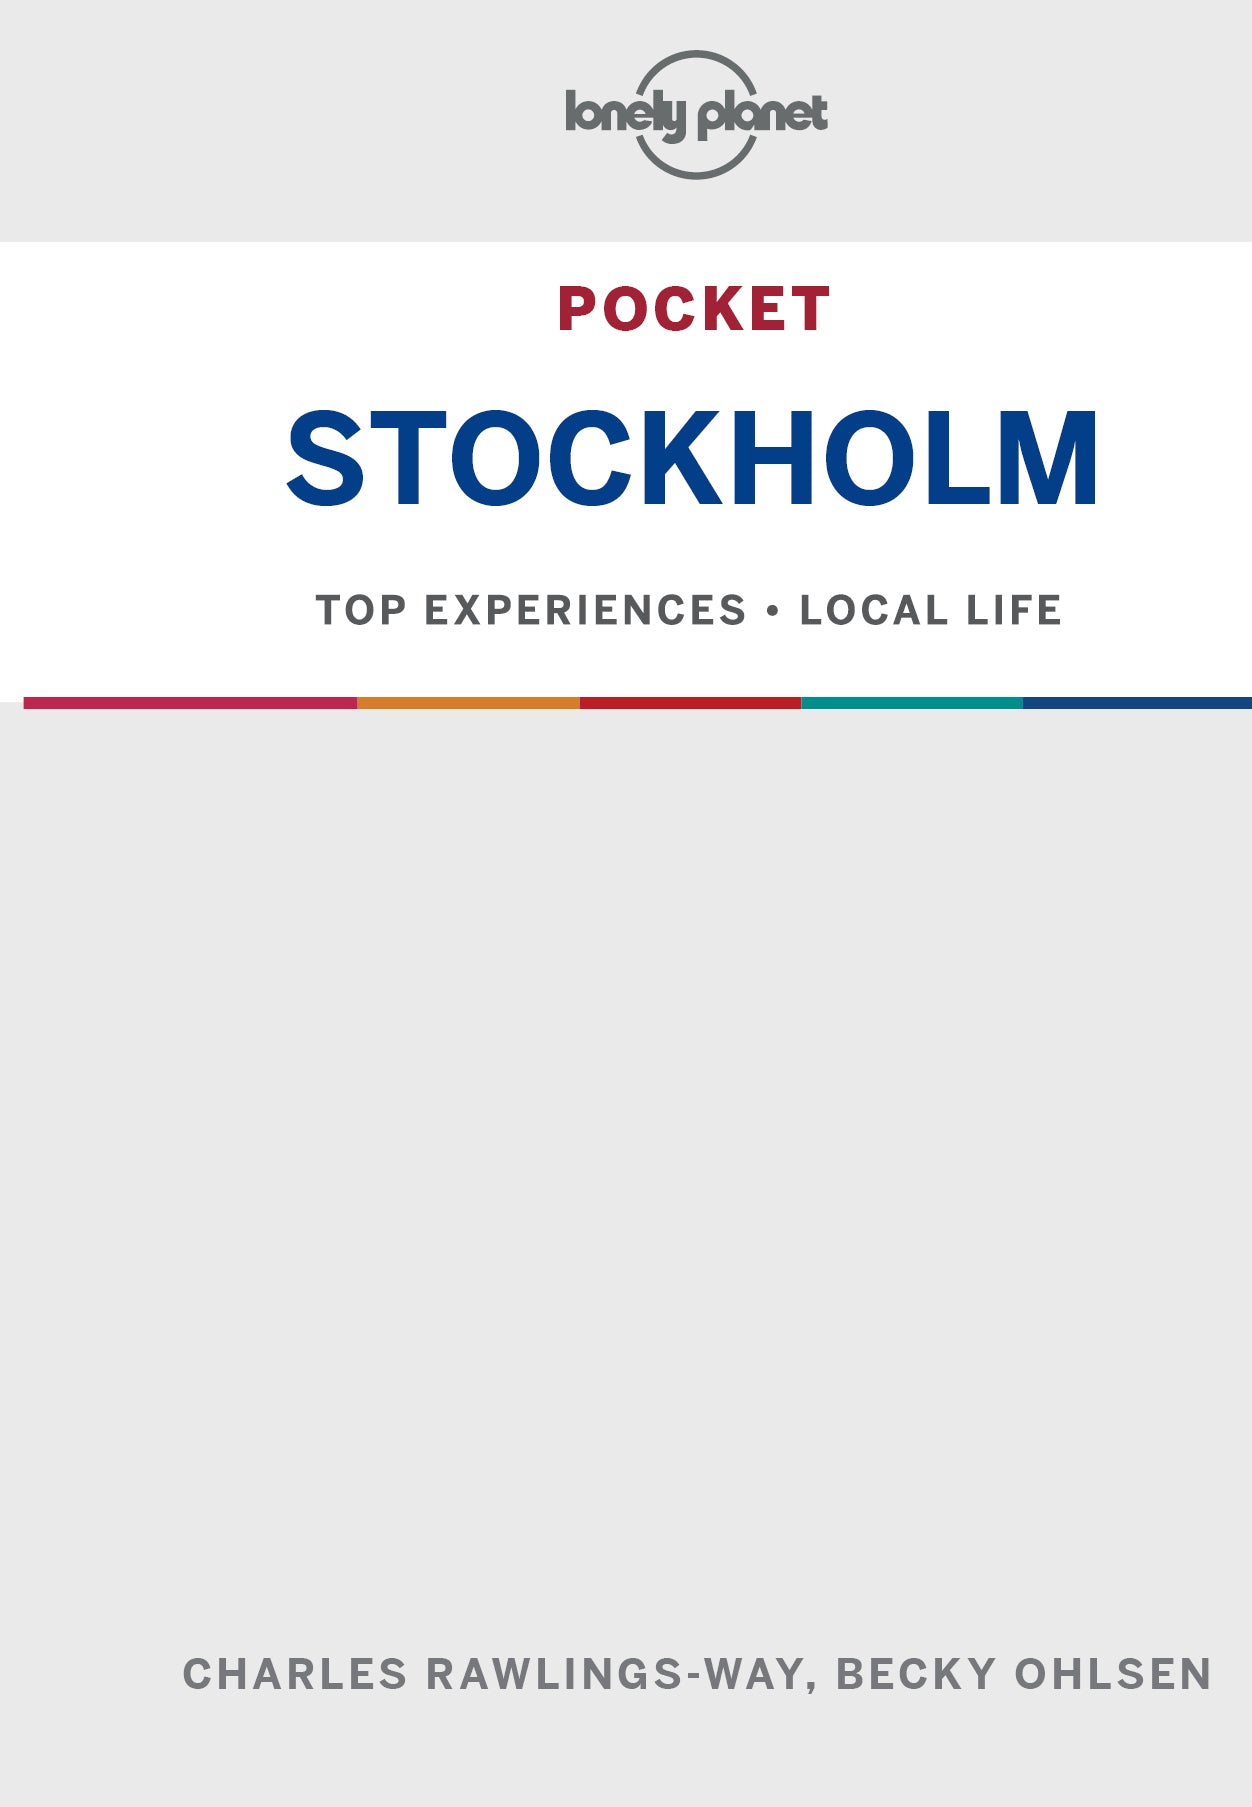 Pocket Stockholm preview